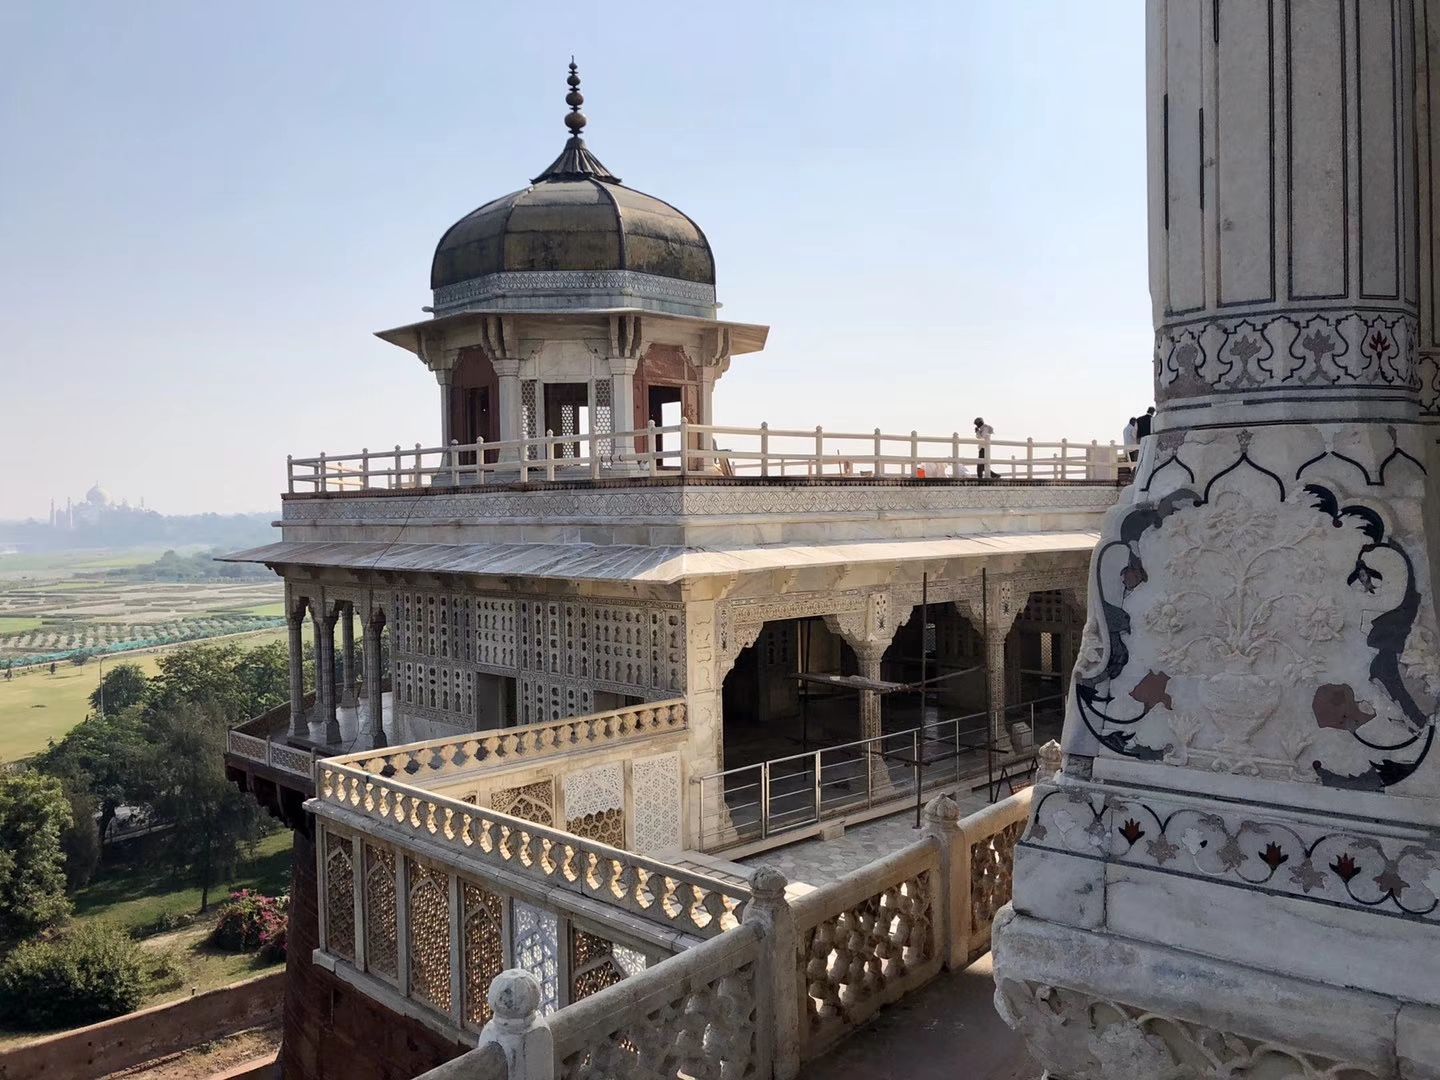 印度阿格拉古堡,位于阿格拉亚穆纳河畔的小山丘上始建于1573年